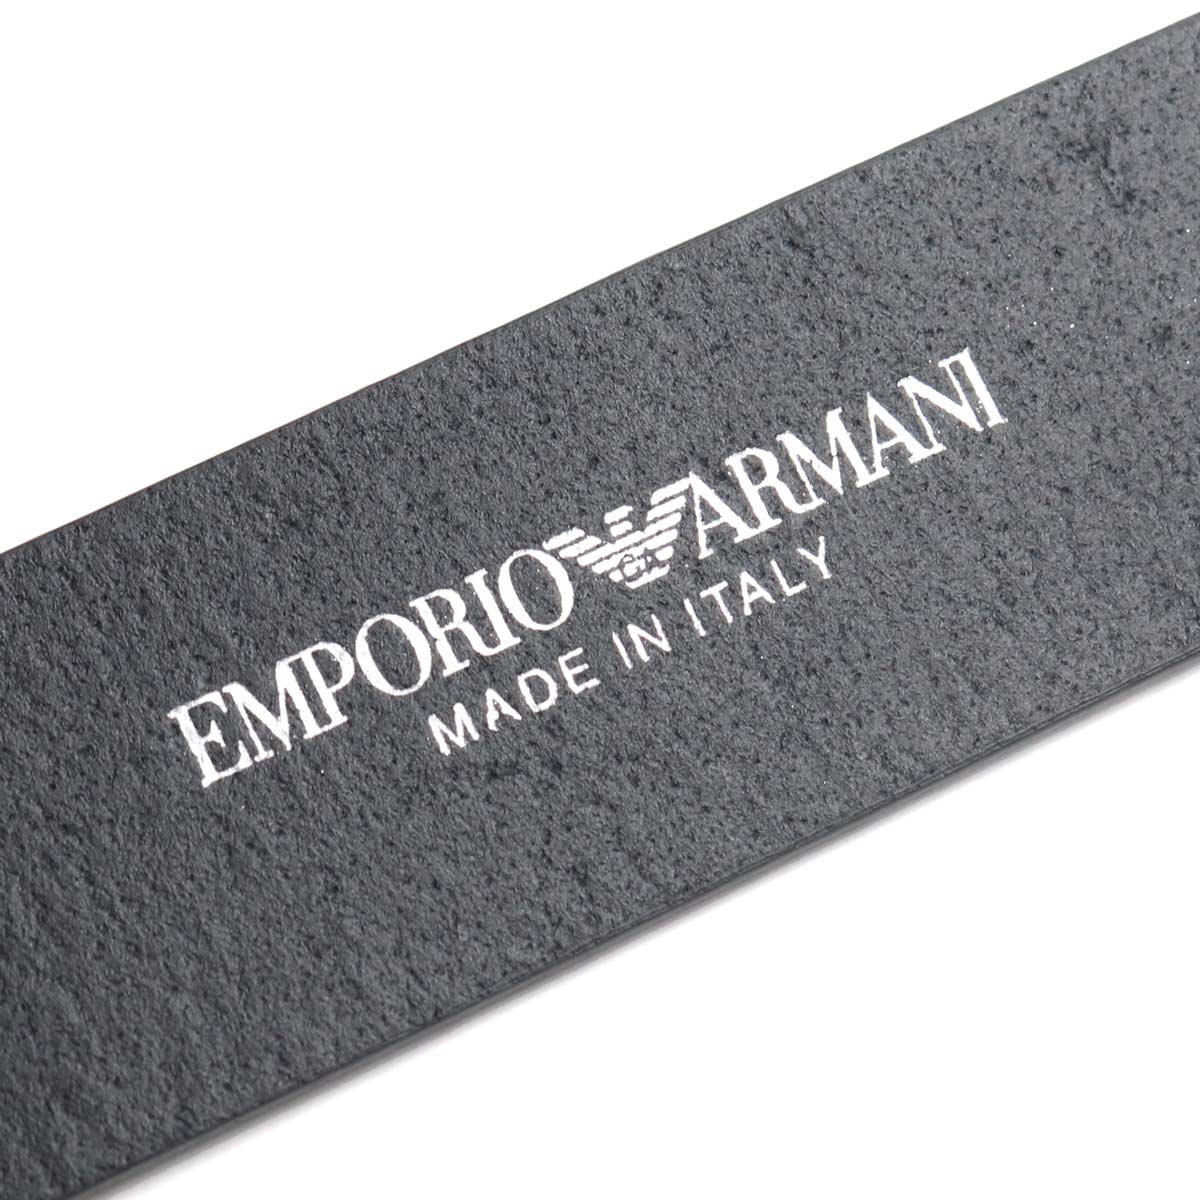 Emporio Armani エンポリオ・アルマーニ Y4S524 ベルト BLU NAVY ネイビー系 メンズ